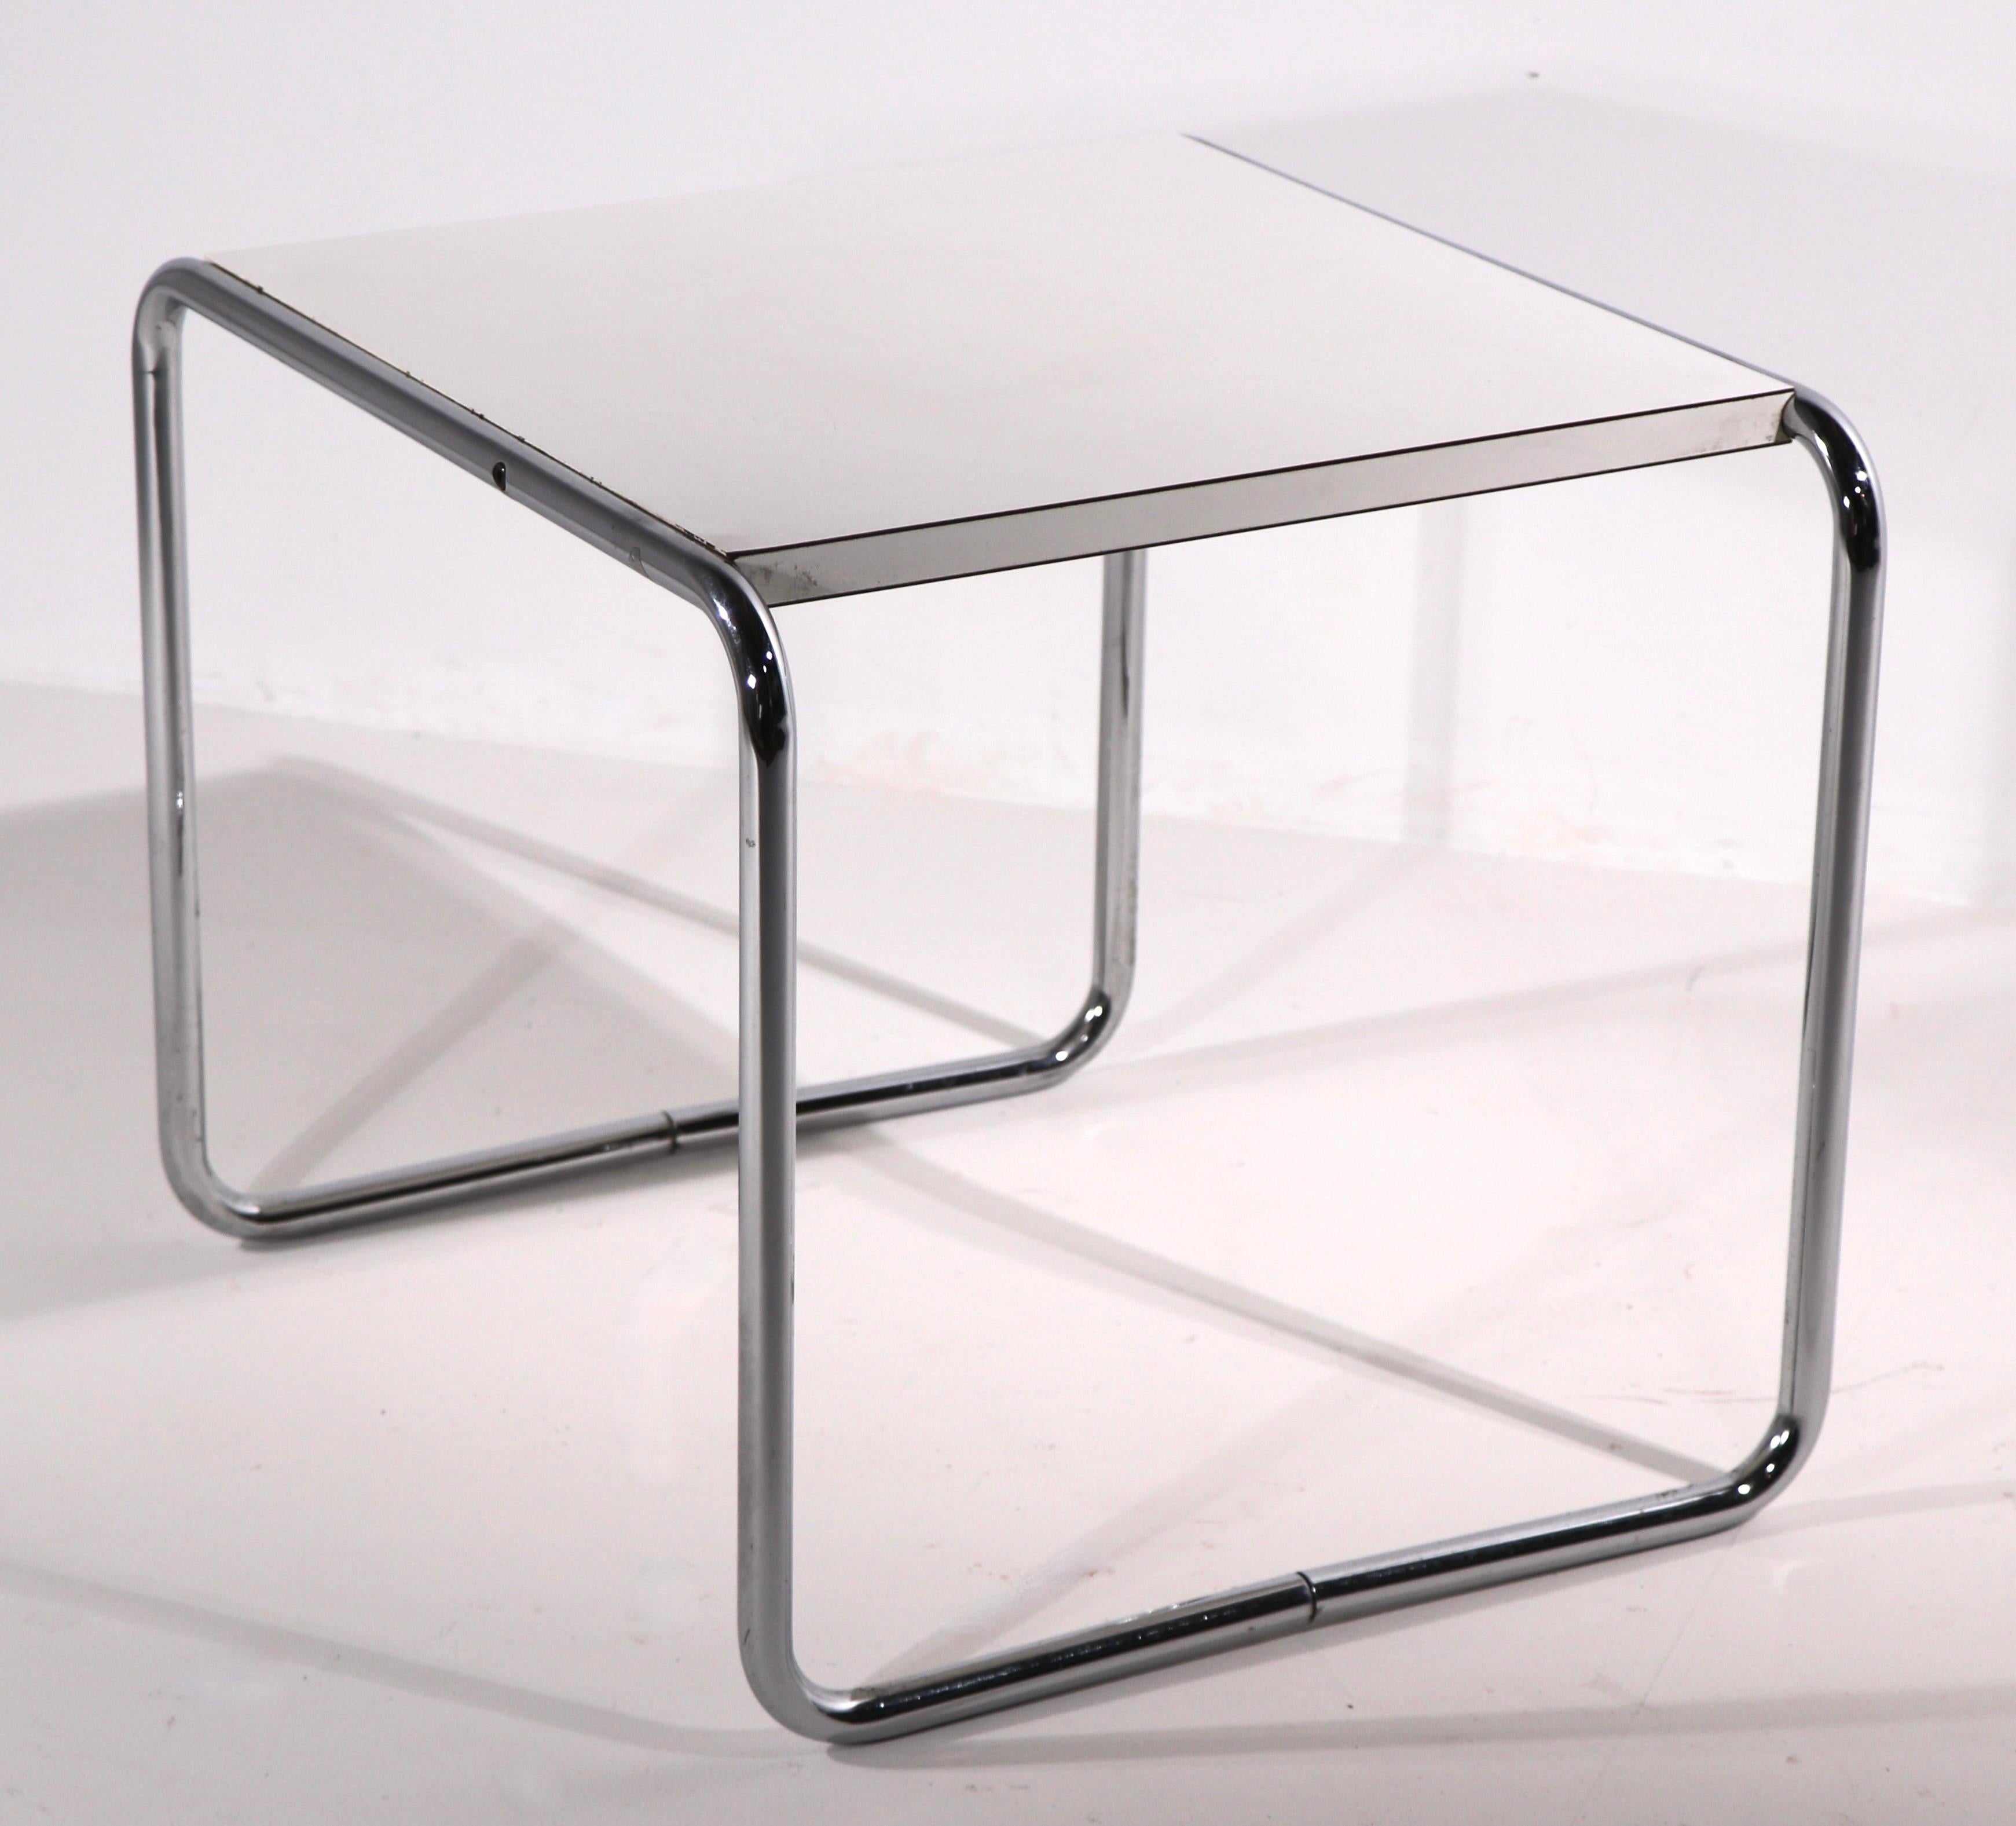 Tolles komplettes Set von Bauhaus School Breuer entworfene Tische (Laccio) hergestellt von Stendig, hergestellt in Finnland. Diese Vintage-Suite besteht aus 2 rechteckigen Couchtischen (53 B x 19 T x 13 H), einer mit schwarzer Laminatplatte, einer